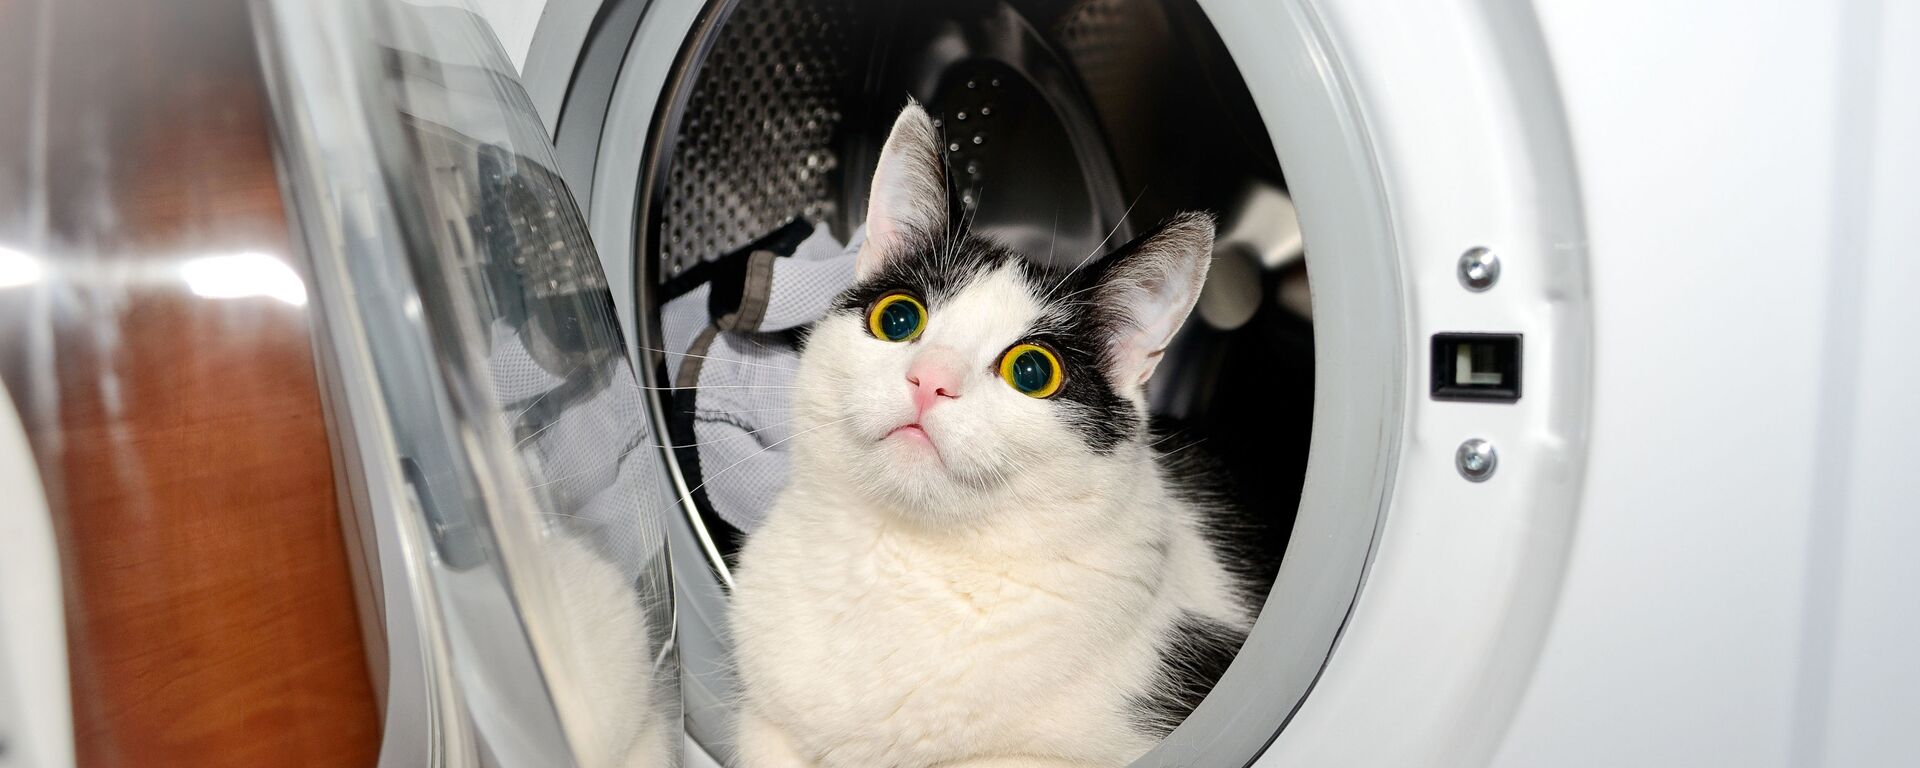 Кот в стиральной машине - Sputnik Литва, 1920, 17.12.2021